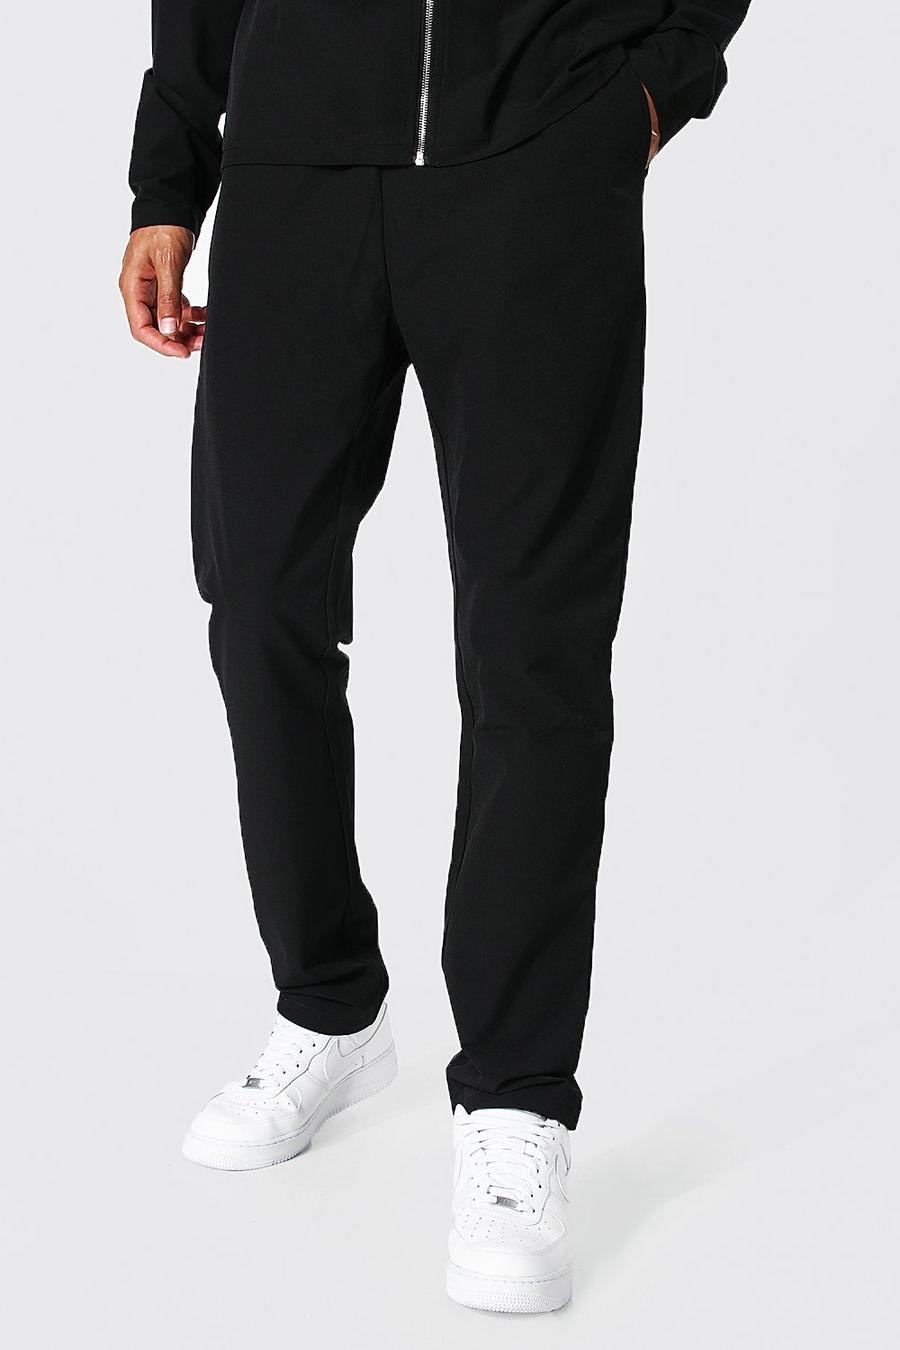 Pantalón Tall ajustado con cintura elástica, Black nero image number 1